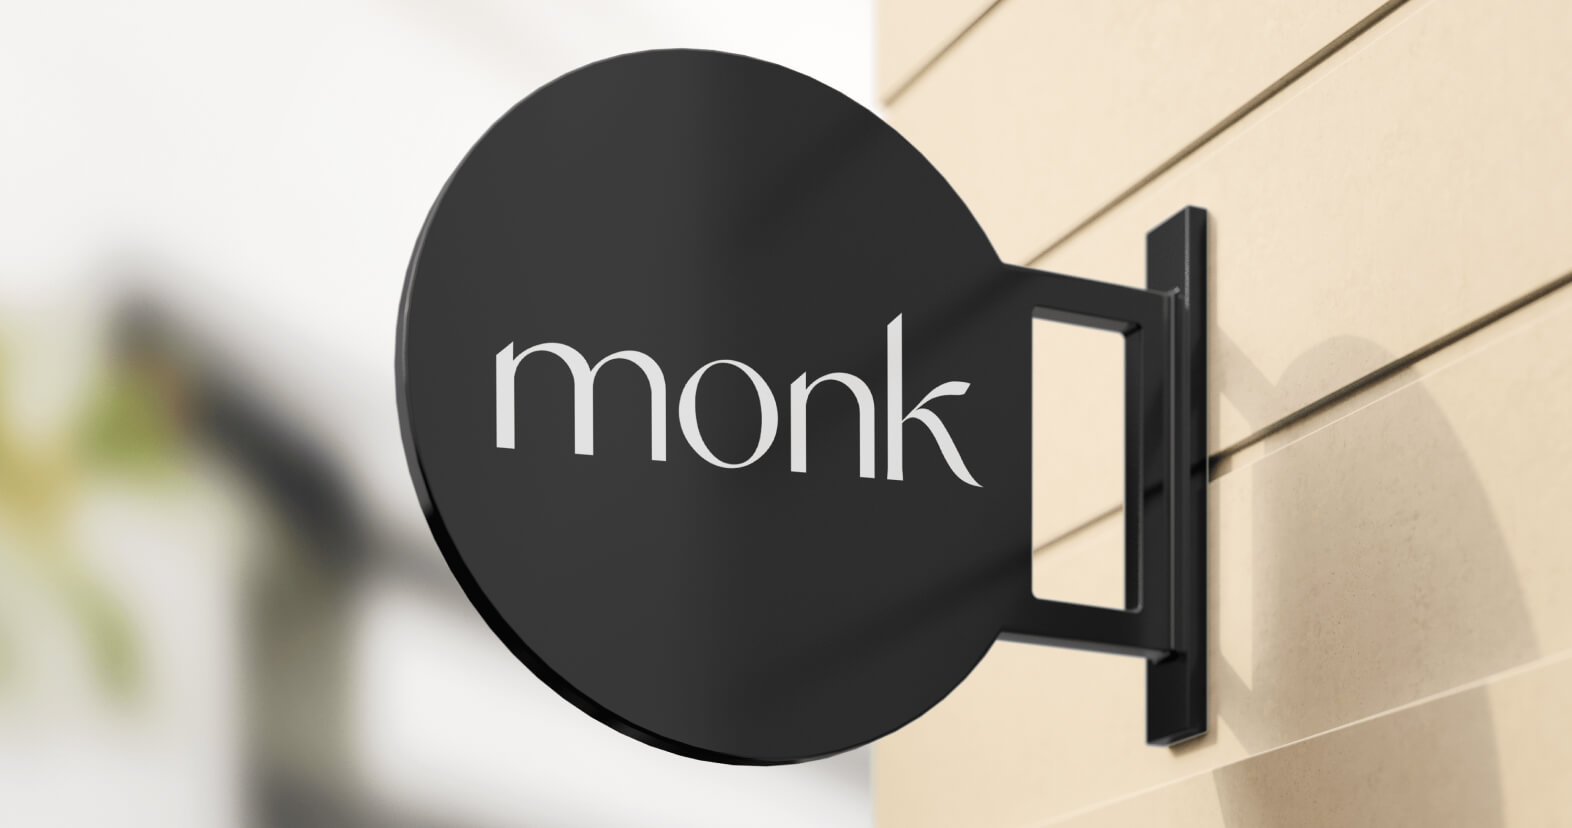 Monk klantenservice